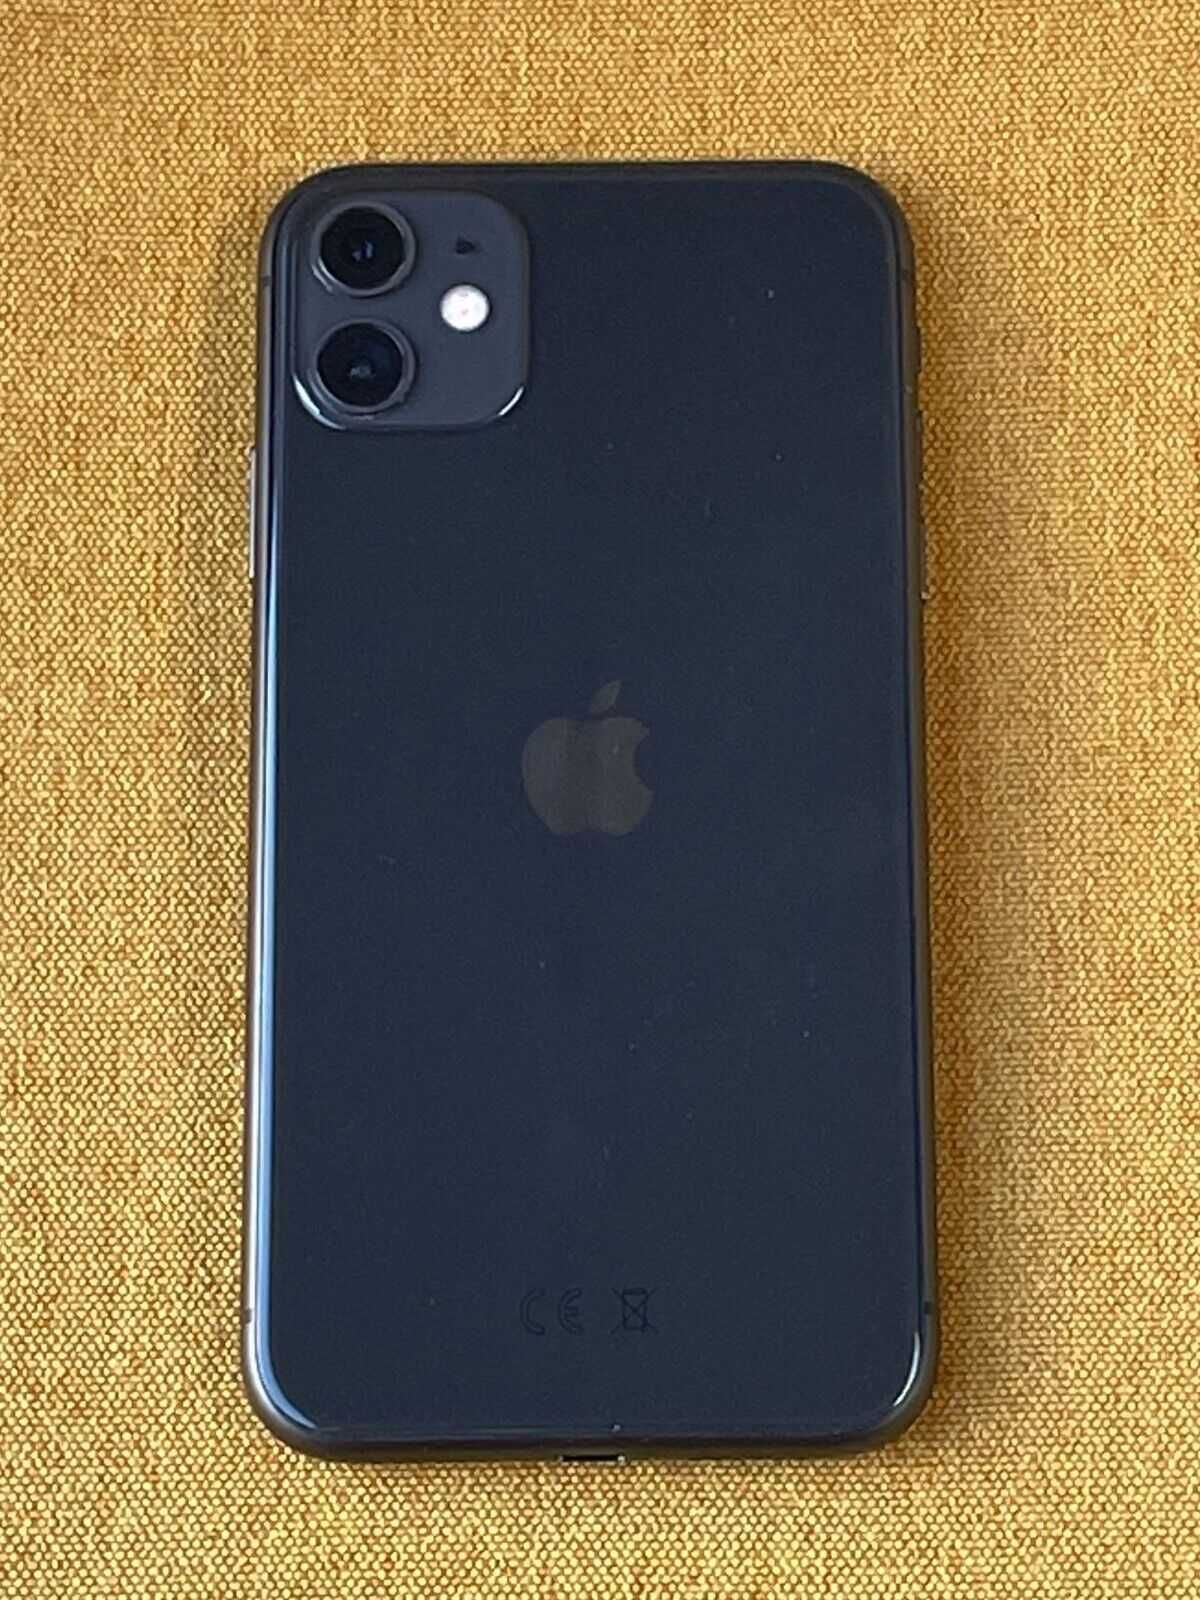 Apple iPhone 11 128gb space gray  factura e garantia